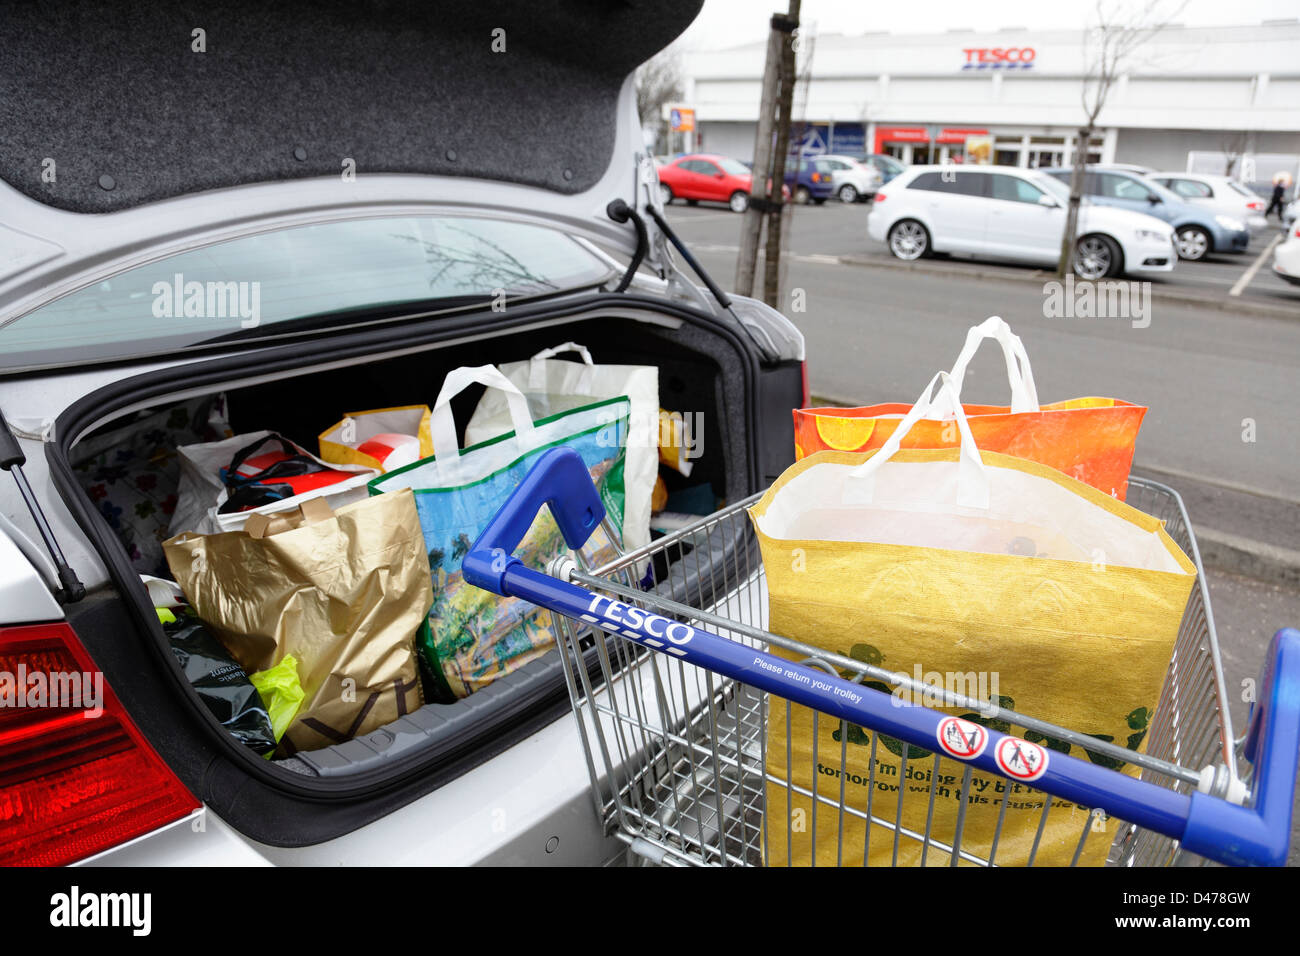 Les sacs dans un Tesco shopping trolley et Tesco dans un parking, Ecosse, Royaume-Uni Banque D'Images